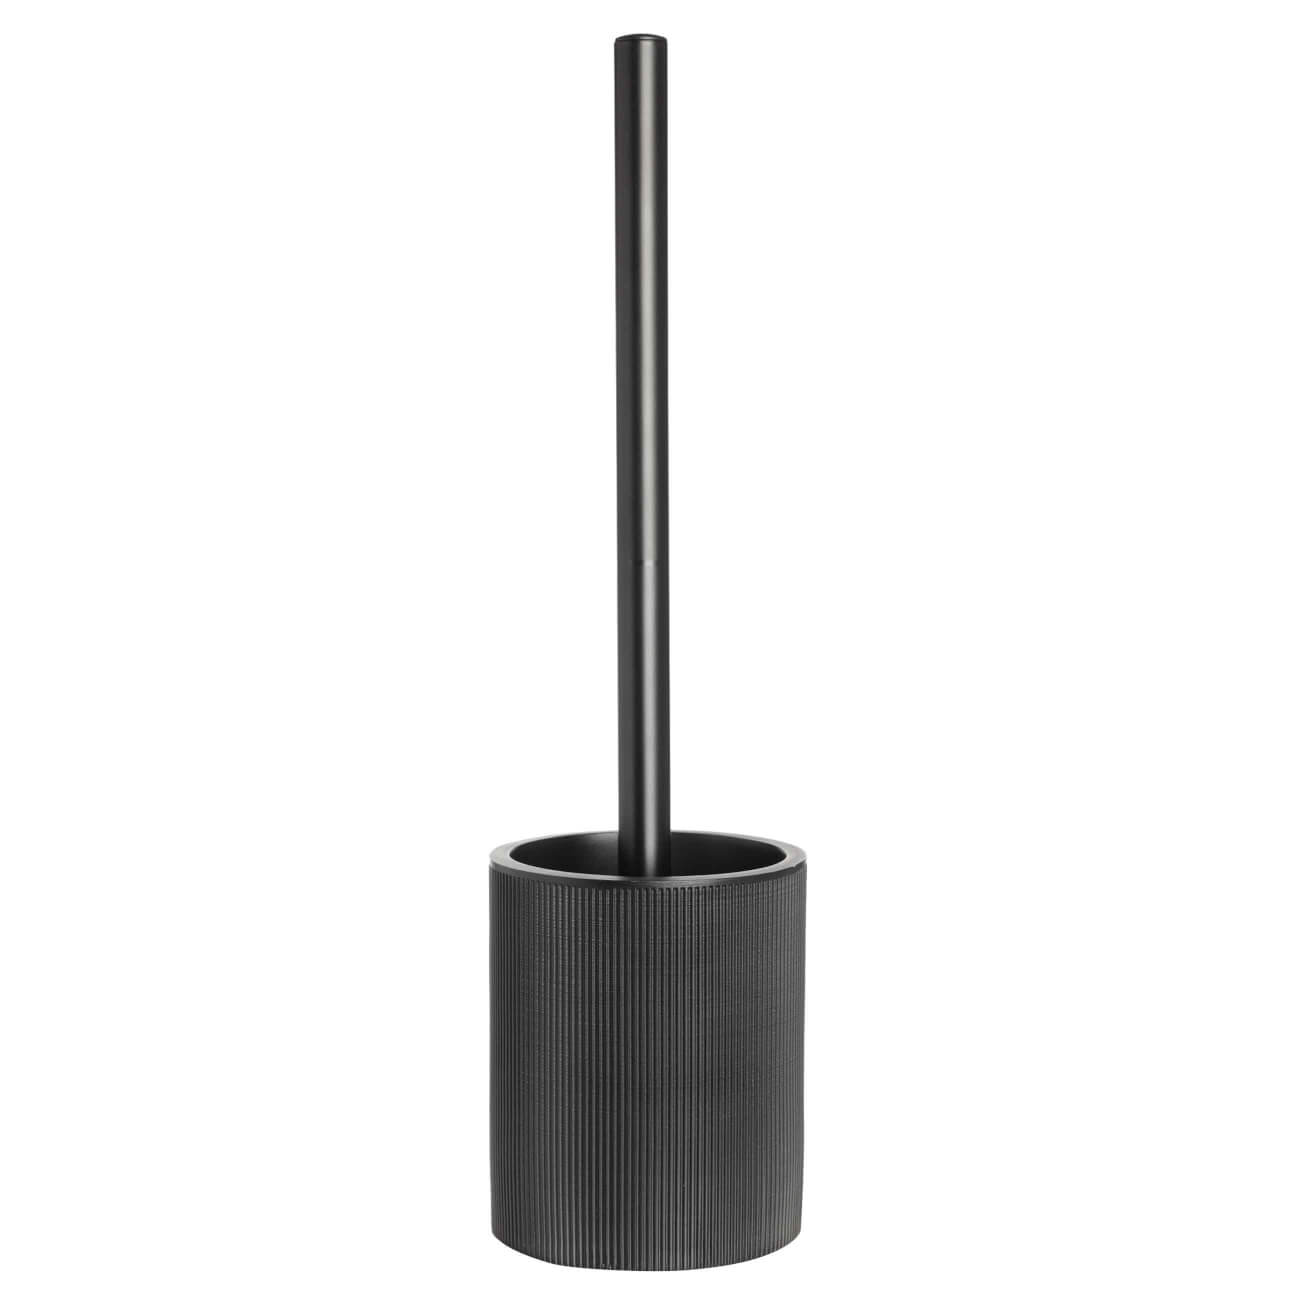 Ерш туалетный, 46 см, с подставкой, пластик/полирезин, черный, Black stripes ручка кнопка cappio рк019 d 20 мм пластик хром